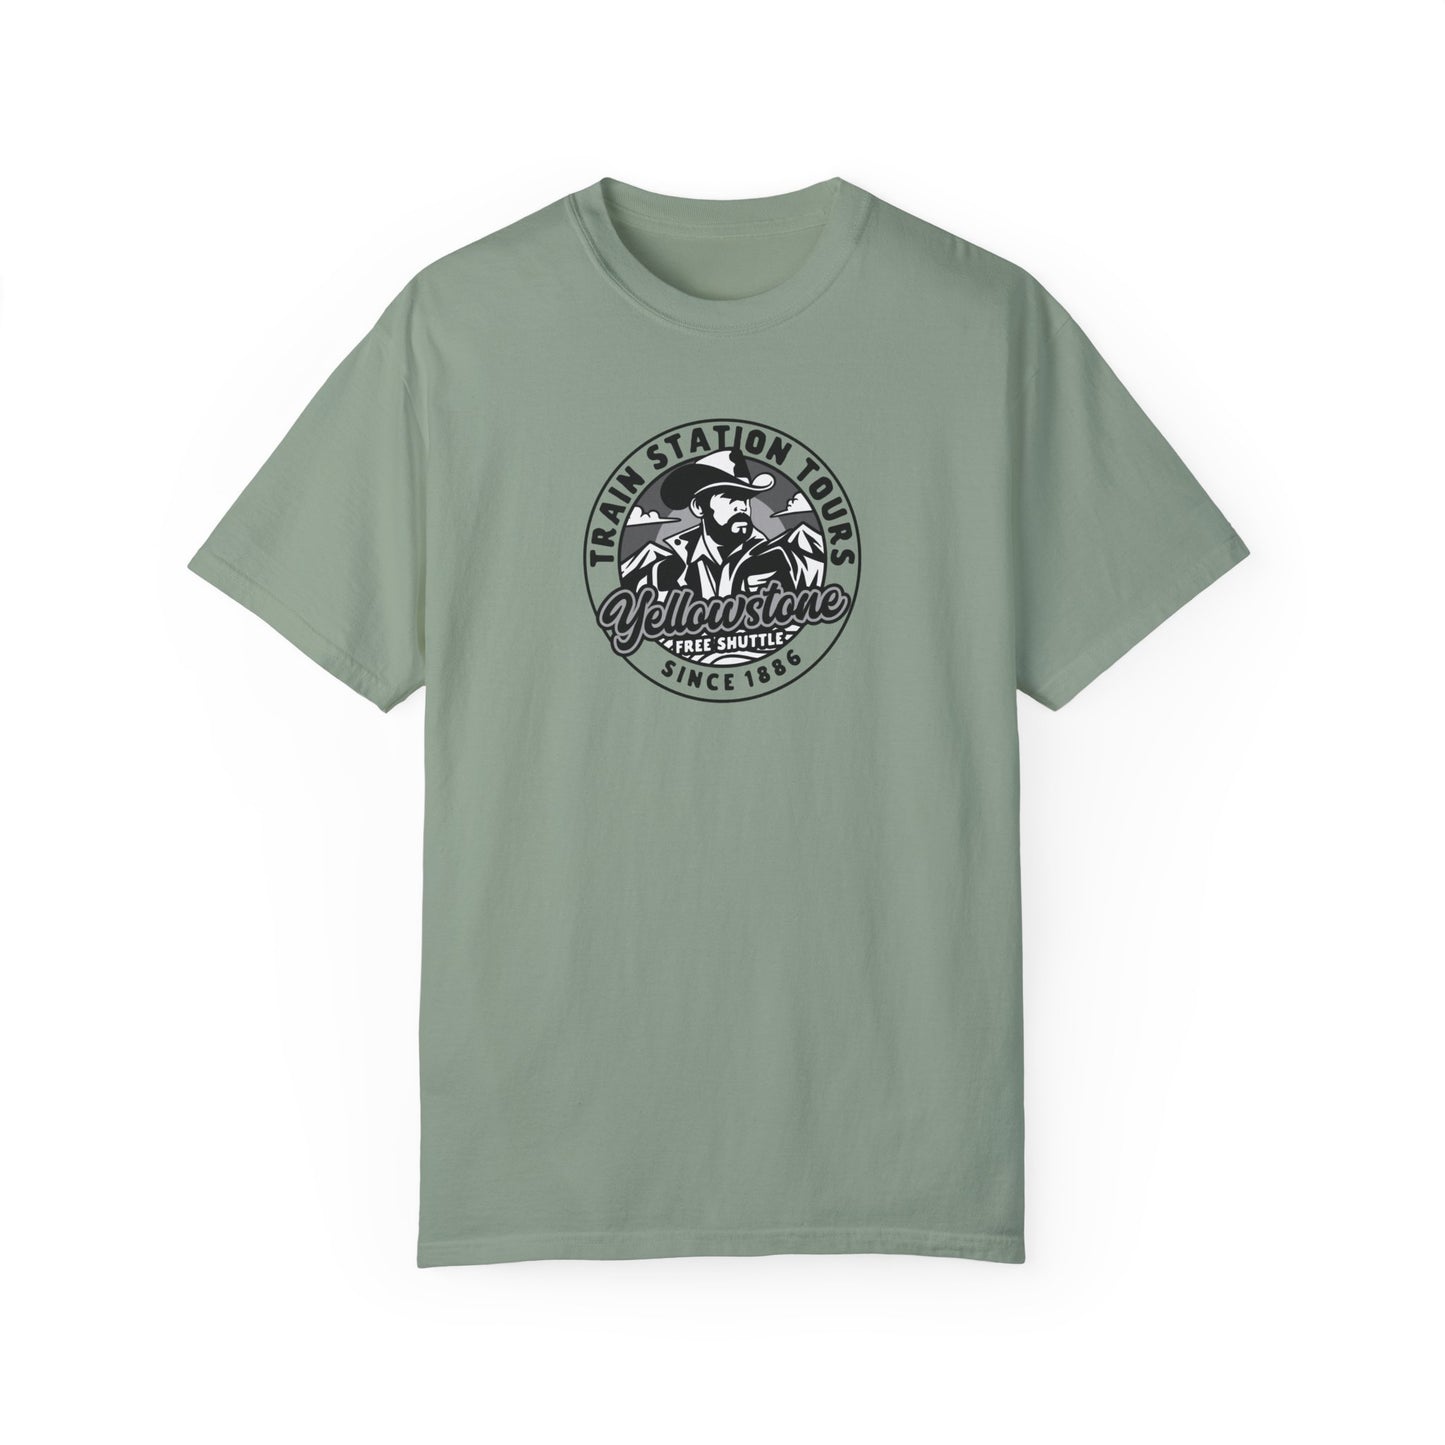 Yellowstone Train Station Tours T-Shirt